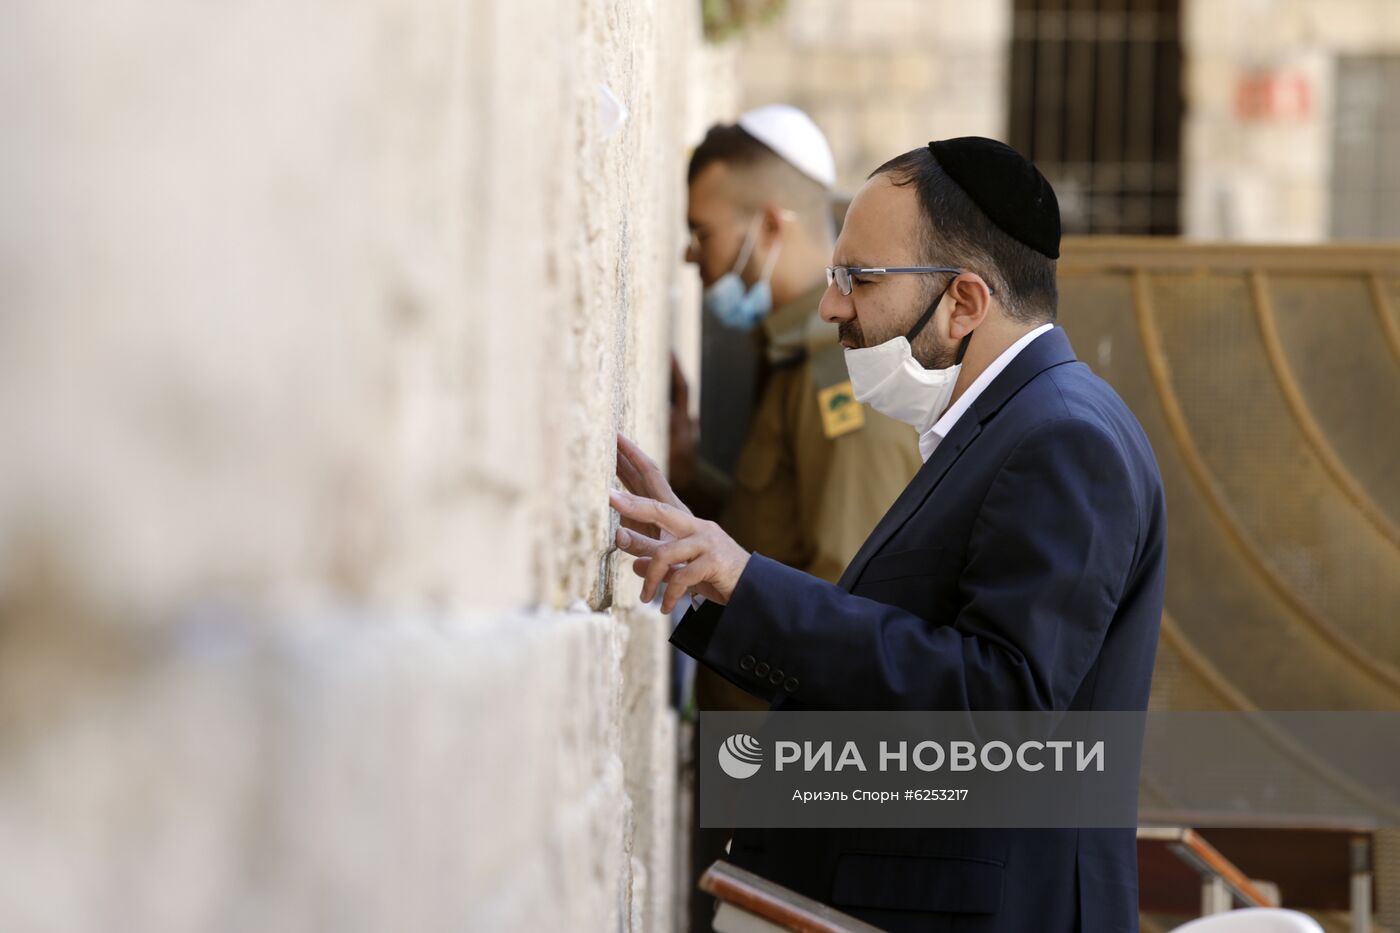 Святые места в Иерусалиме открываются для посещения